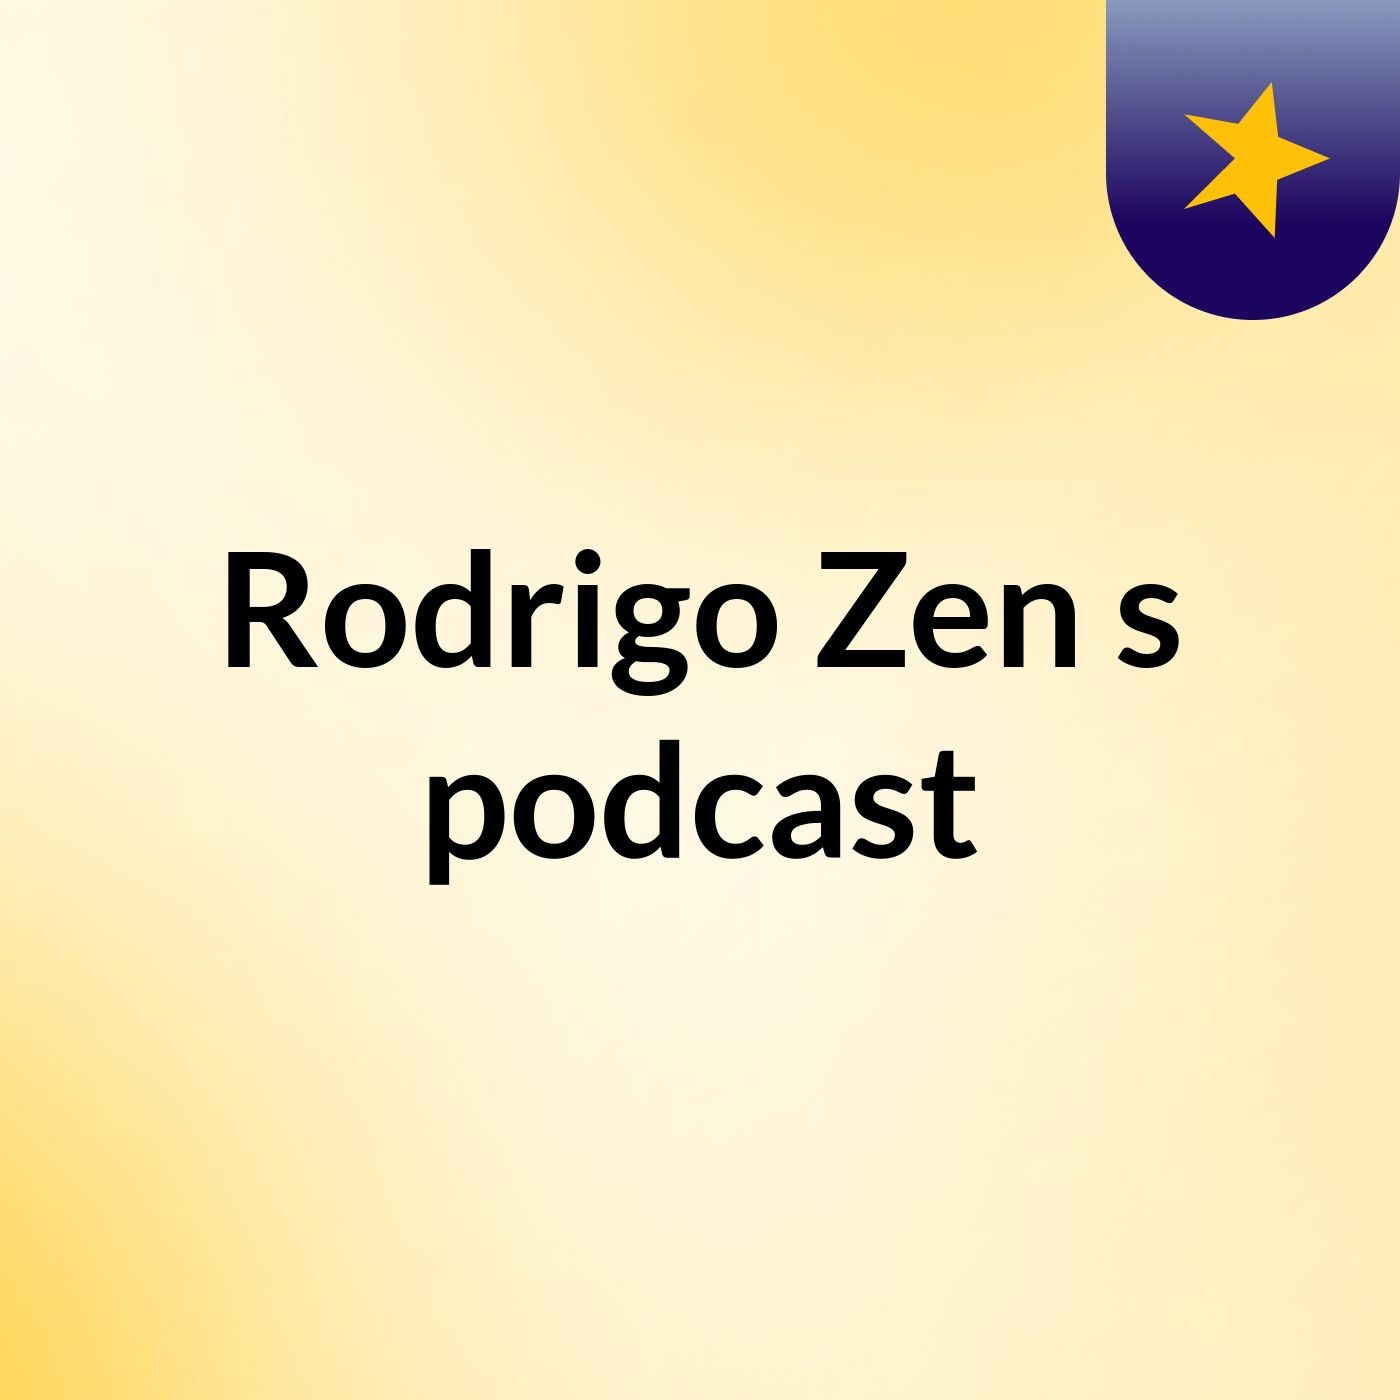 Rodrigo Zen's podcast